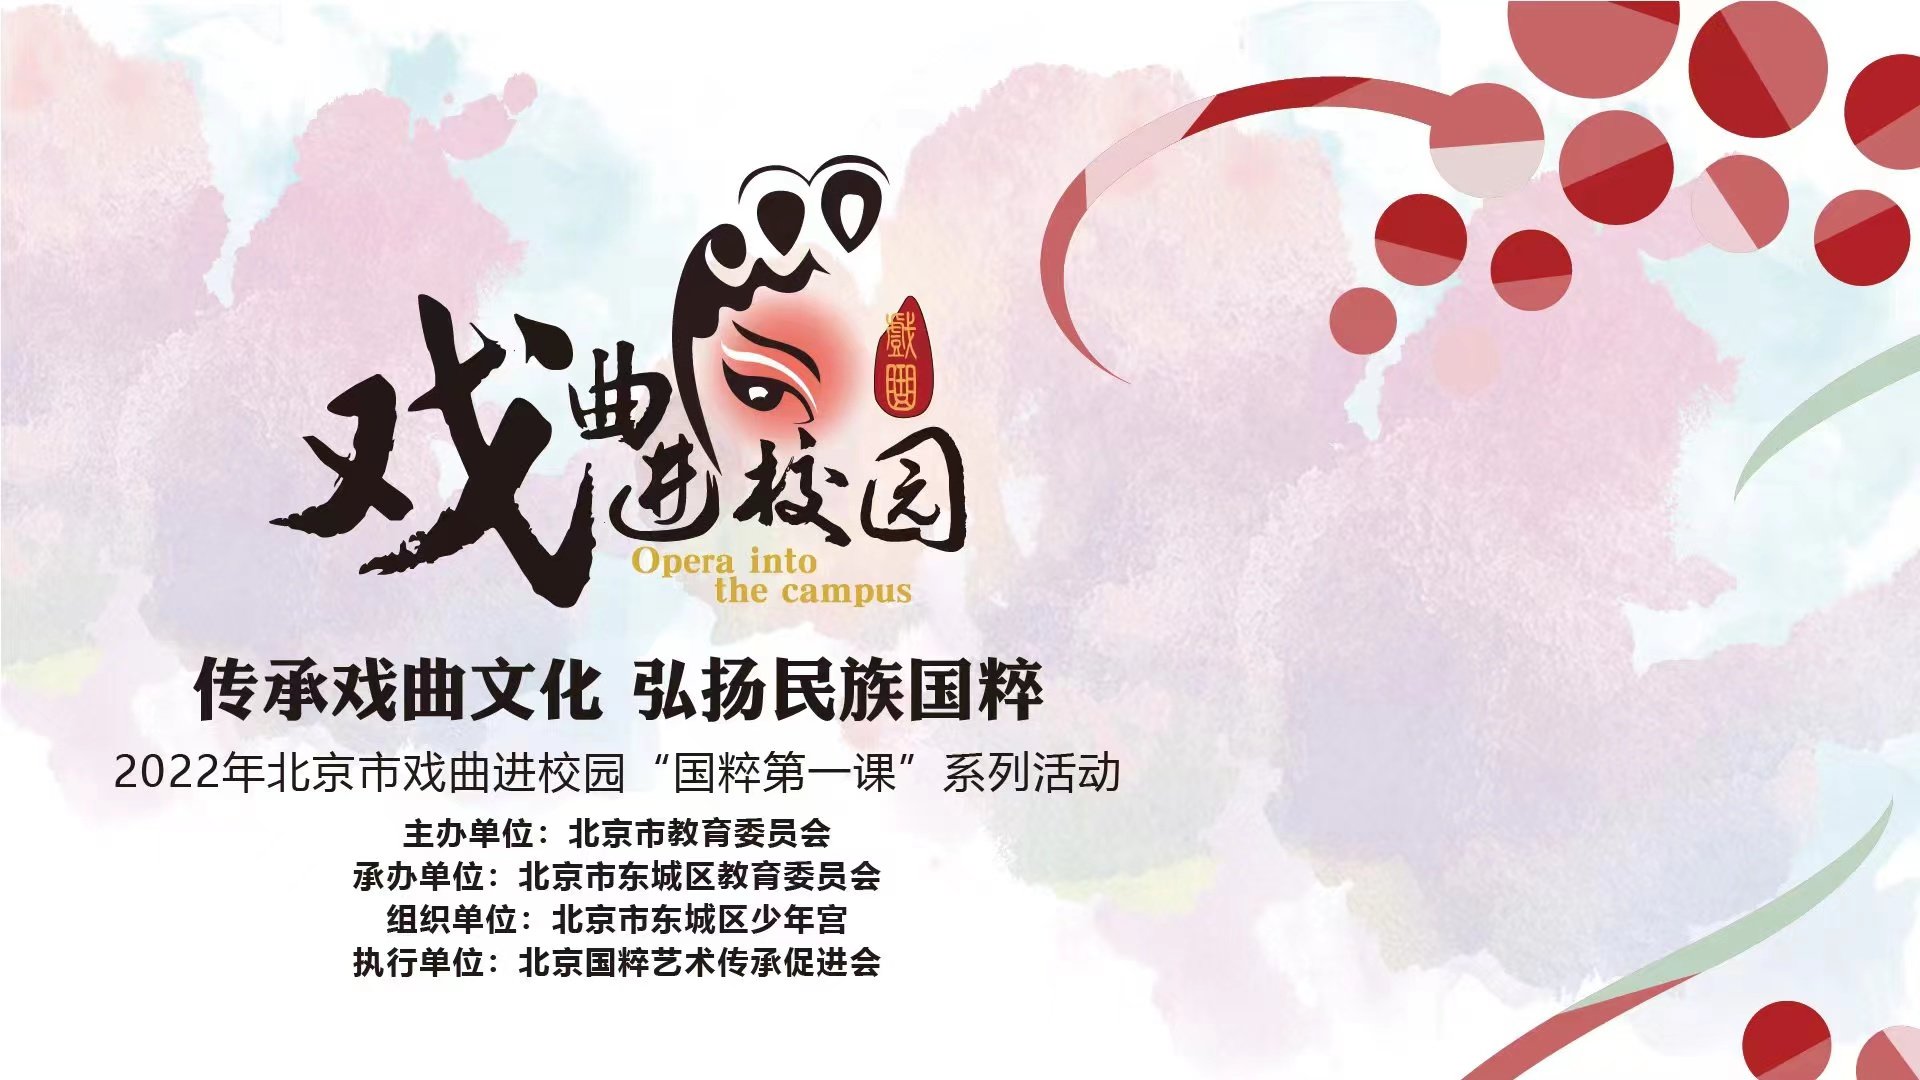 2022年北京市学生戏曲进校园系列活动——“国粹第一课”